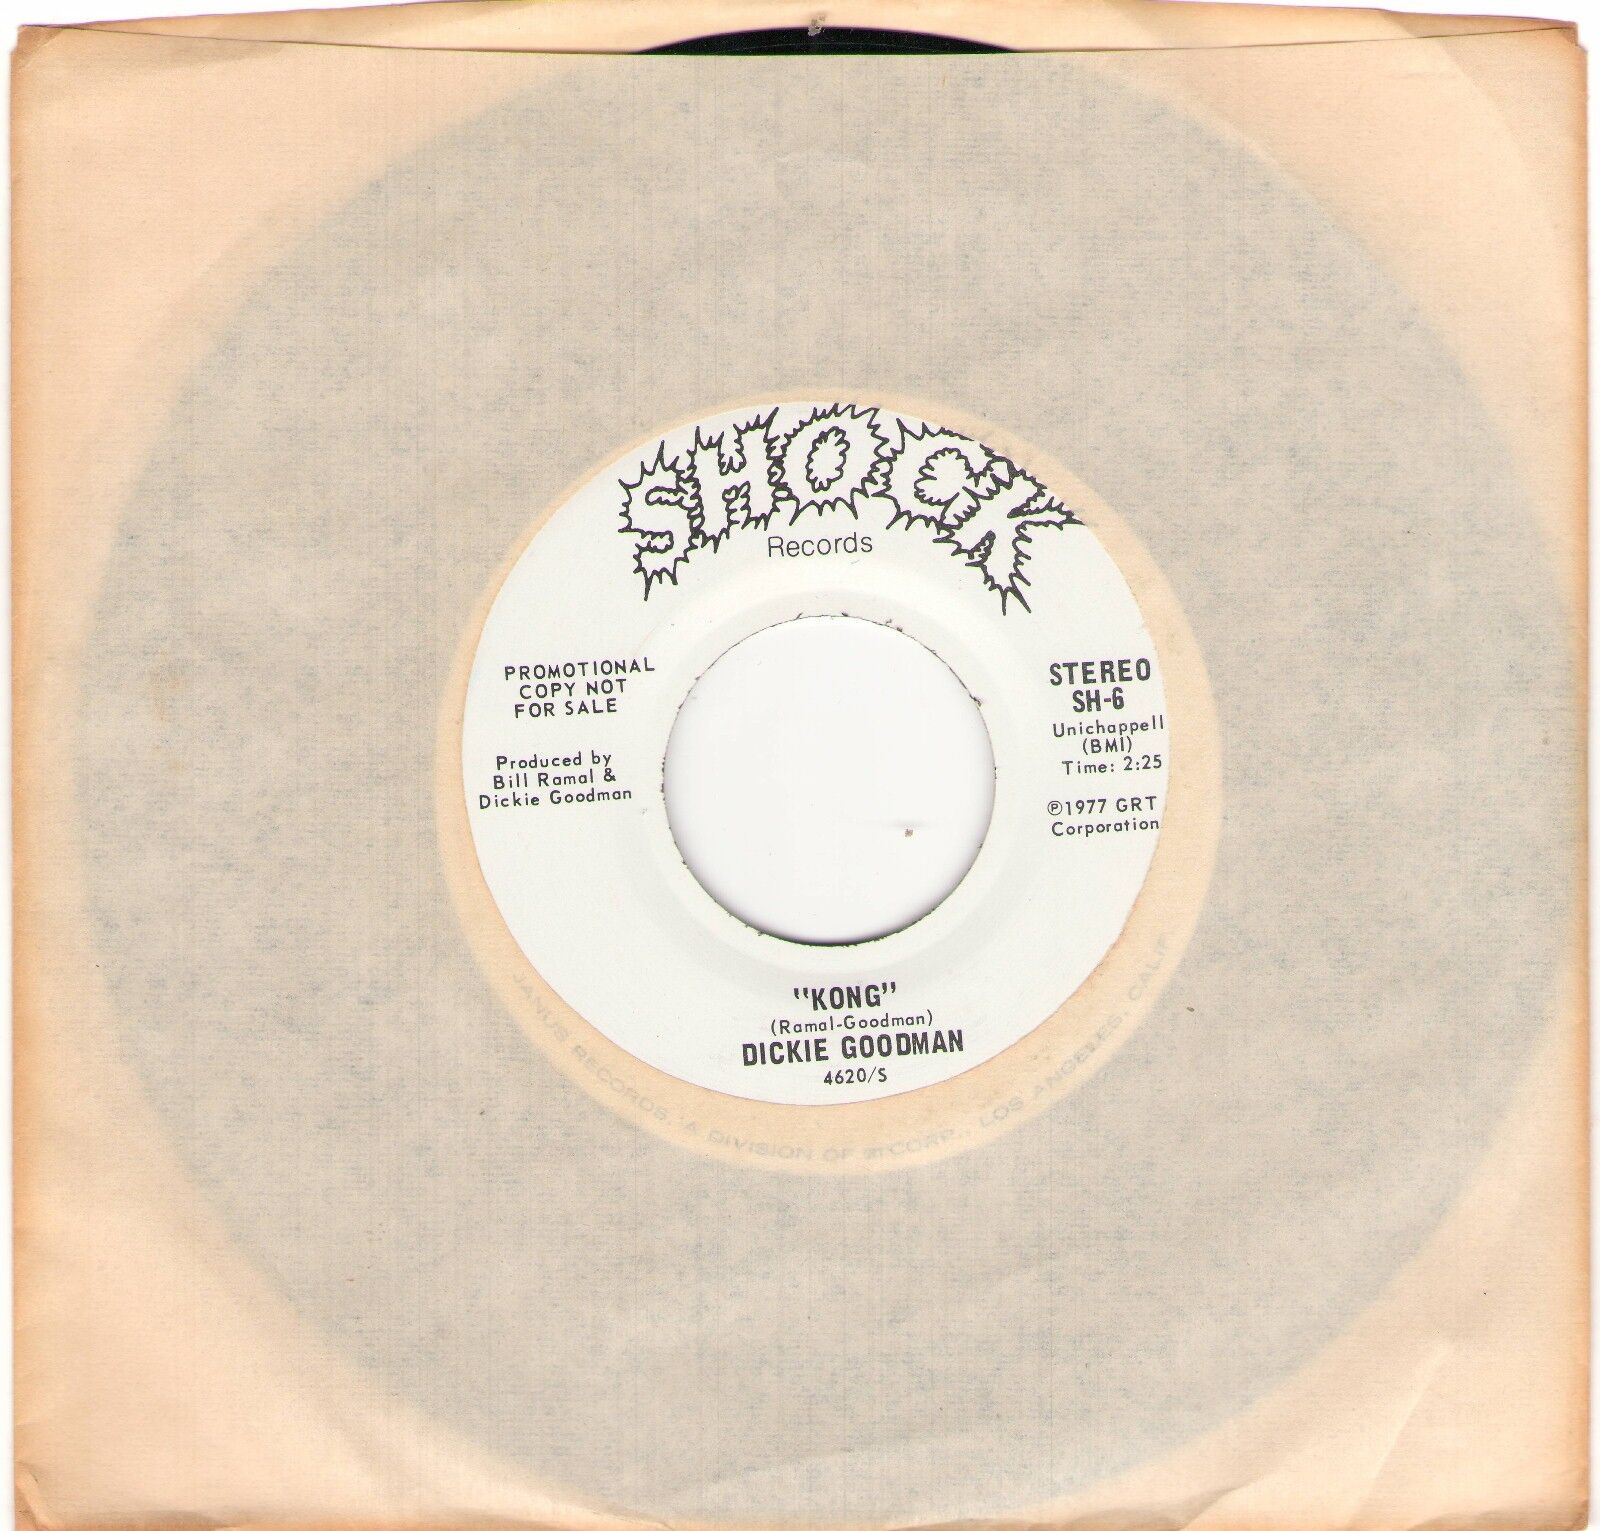  Promo 45 rpm - KONG - DICKIE GOODMAN - White Label - Original Press - Near Mint